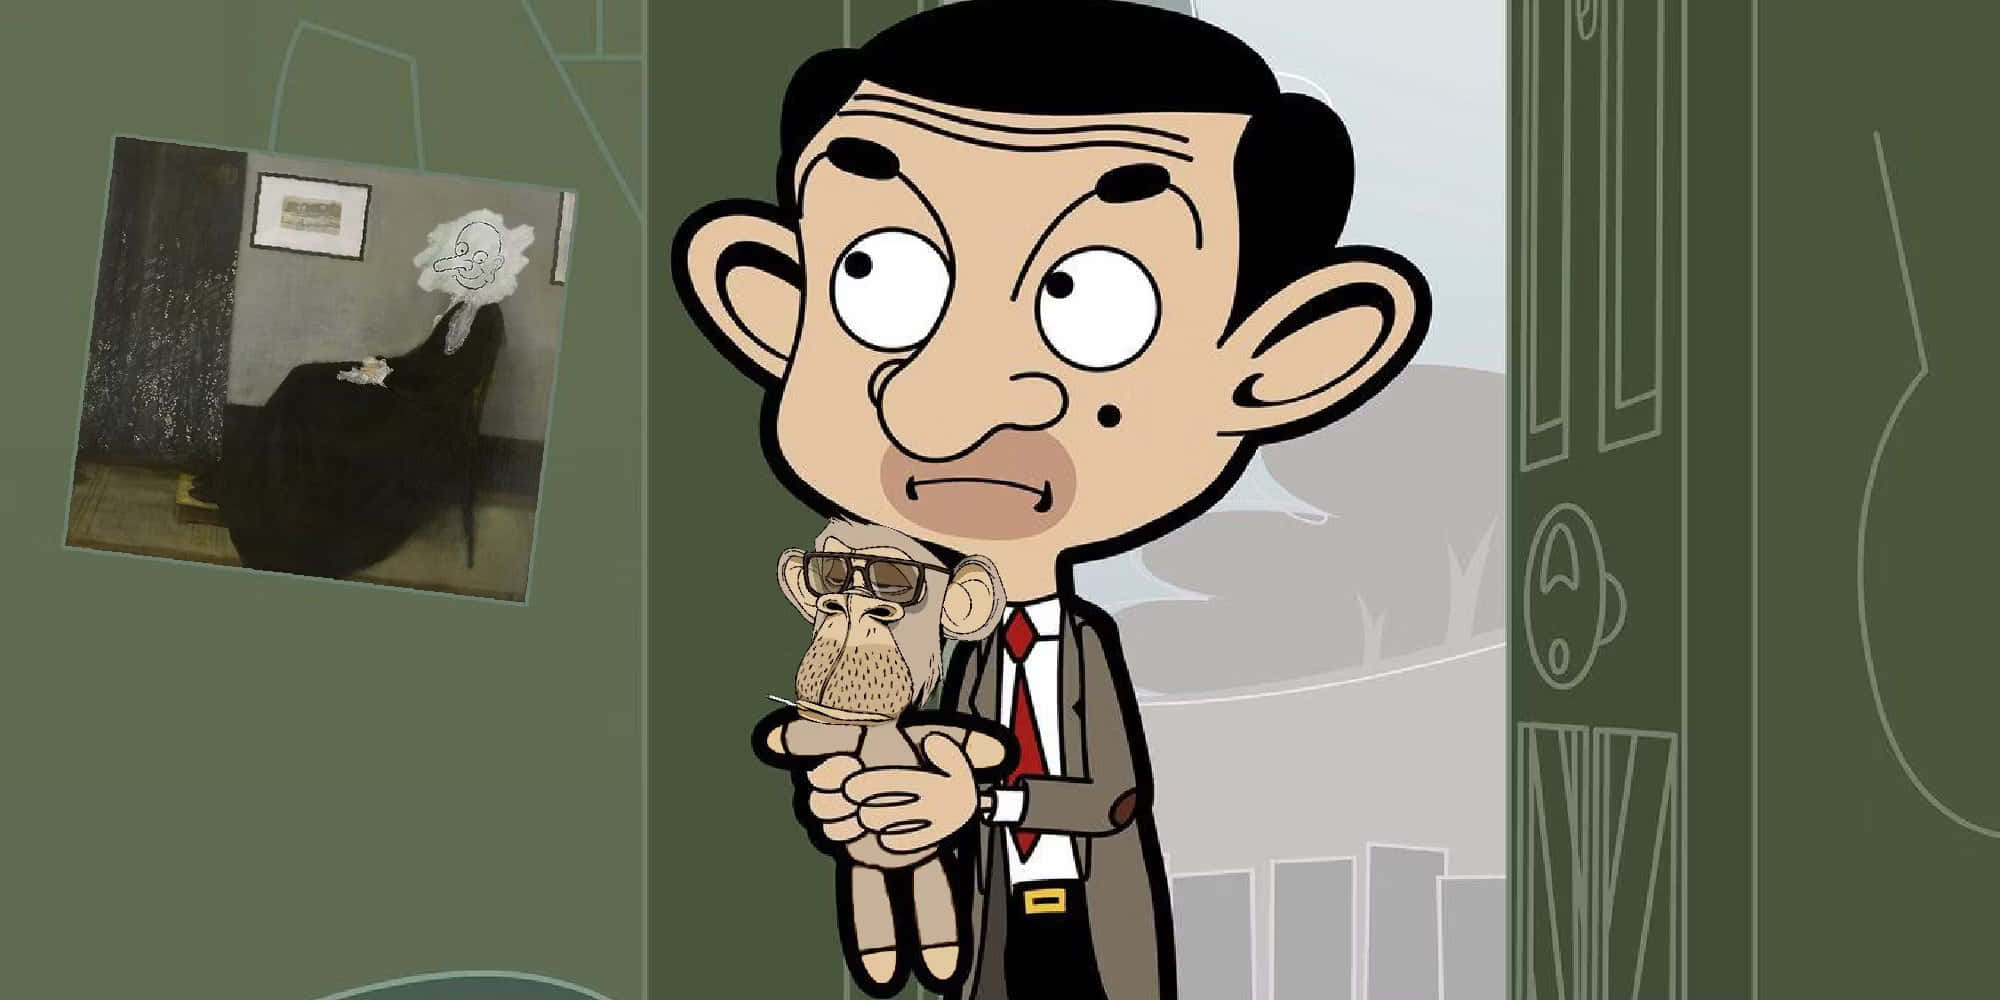 Mr. Bean's Hilarious Adventures